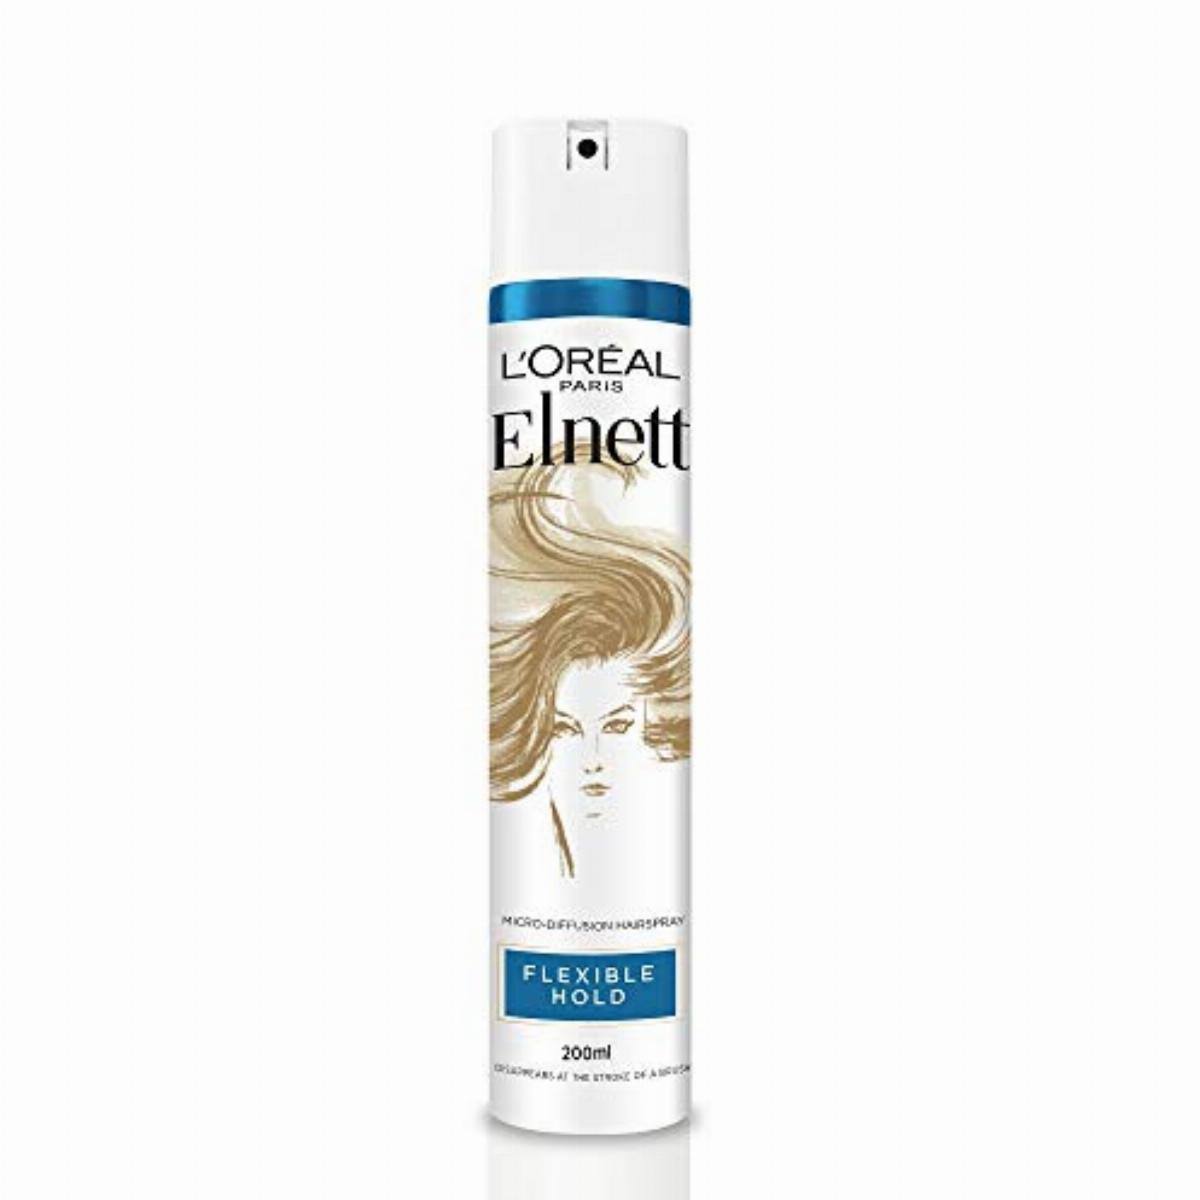 L'oreal Elnett Flexible Hold Hair Spray - 200ml